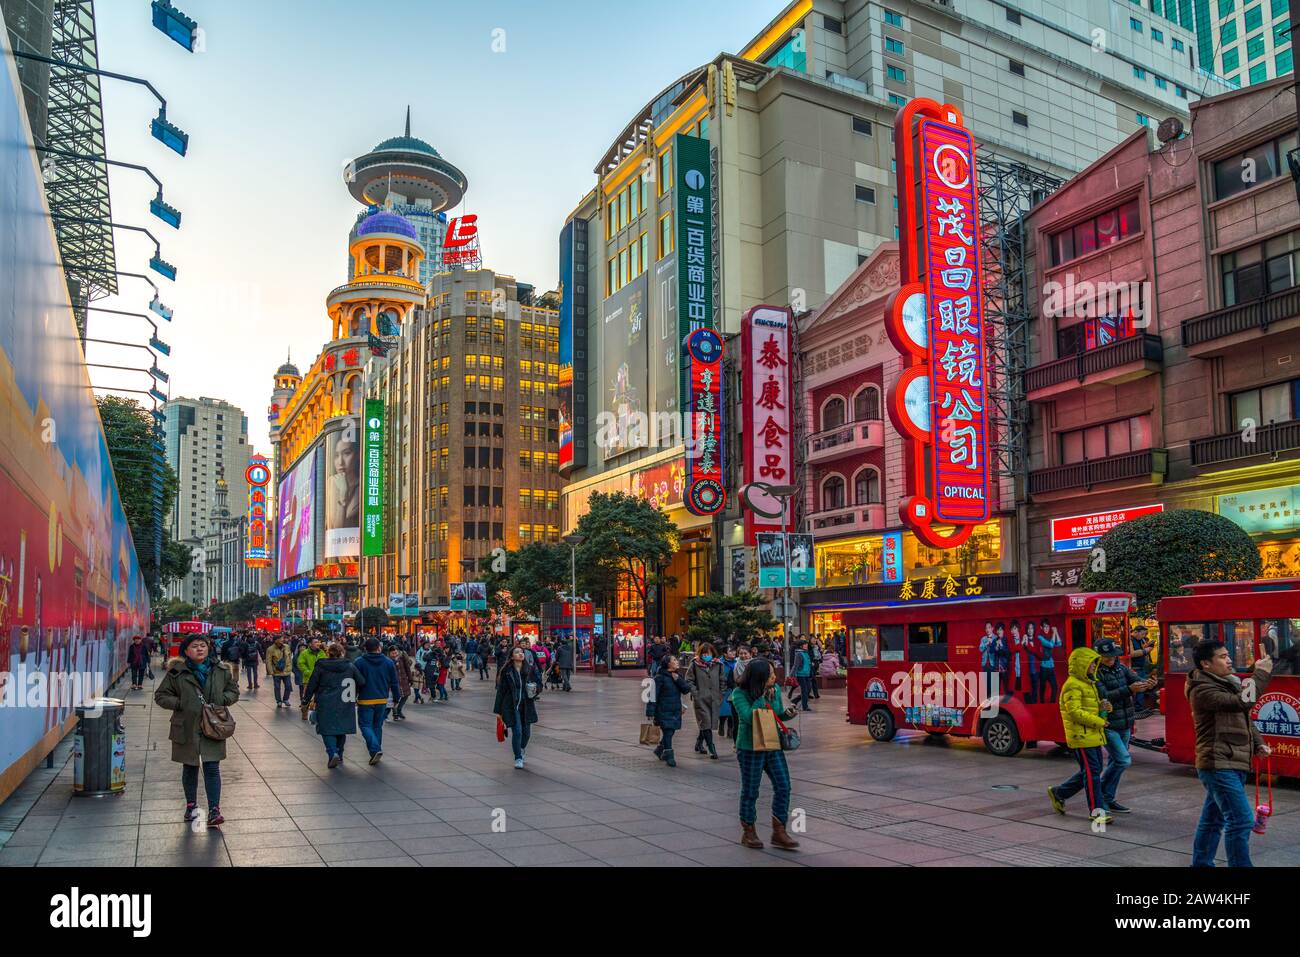 Shanghai, CHINA - 13. FEBRUAR 2018: Auf der Nanjing Road leuchten Neonschilder. Die Gegend ist das Haupteinkaufsviertel Shanghais und eines der geschäftigsten der Welt Stockfoto